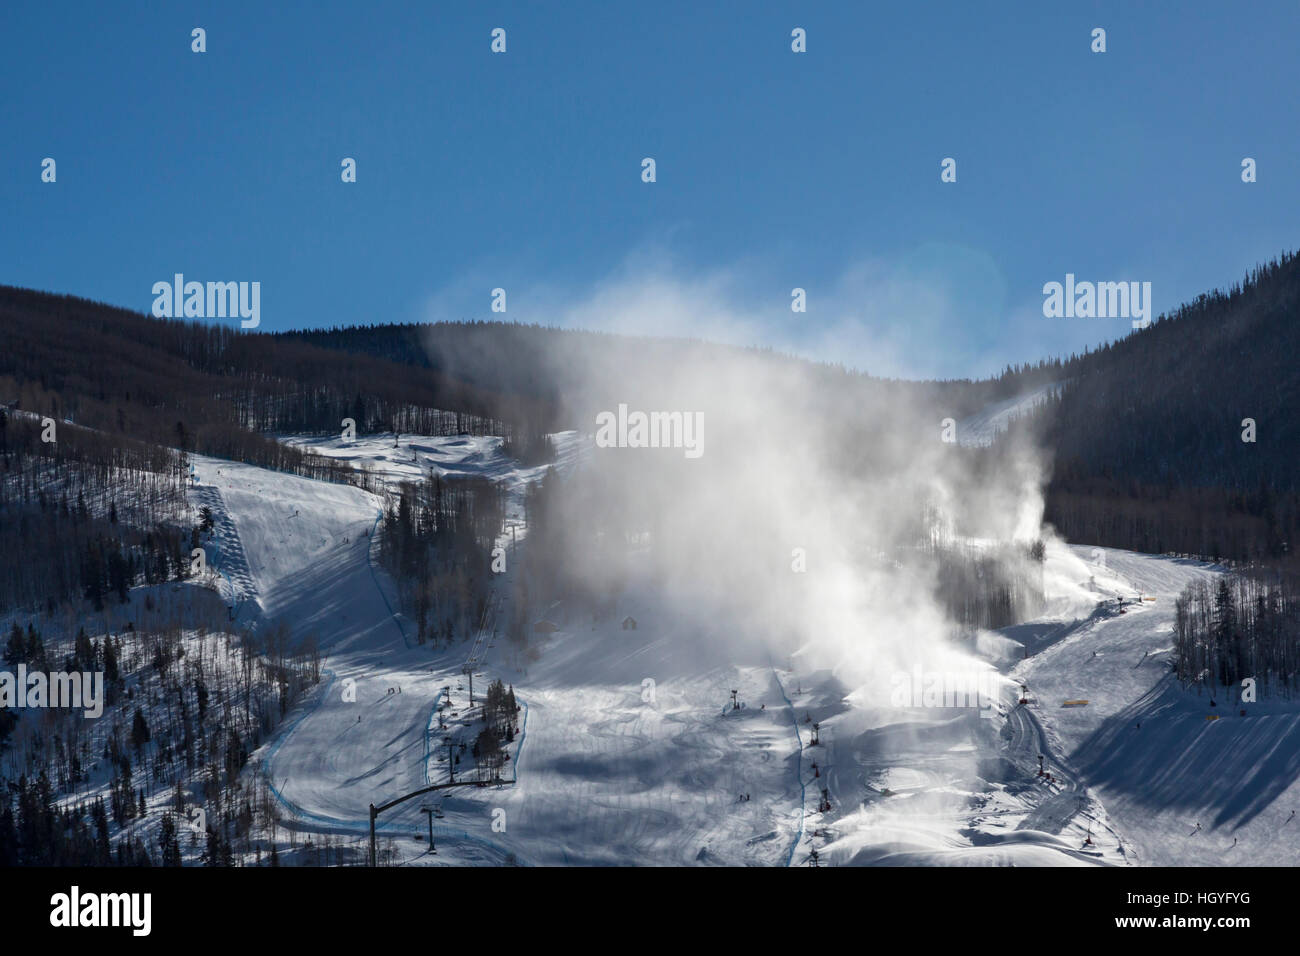 Vail, Colorado - Snowmaking at Vail Ski Resort Stock Photo